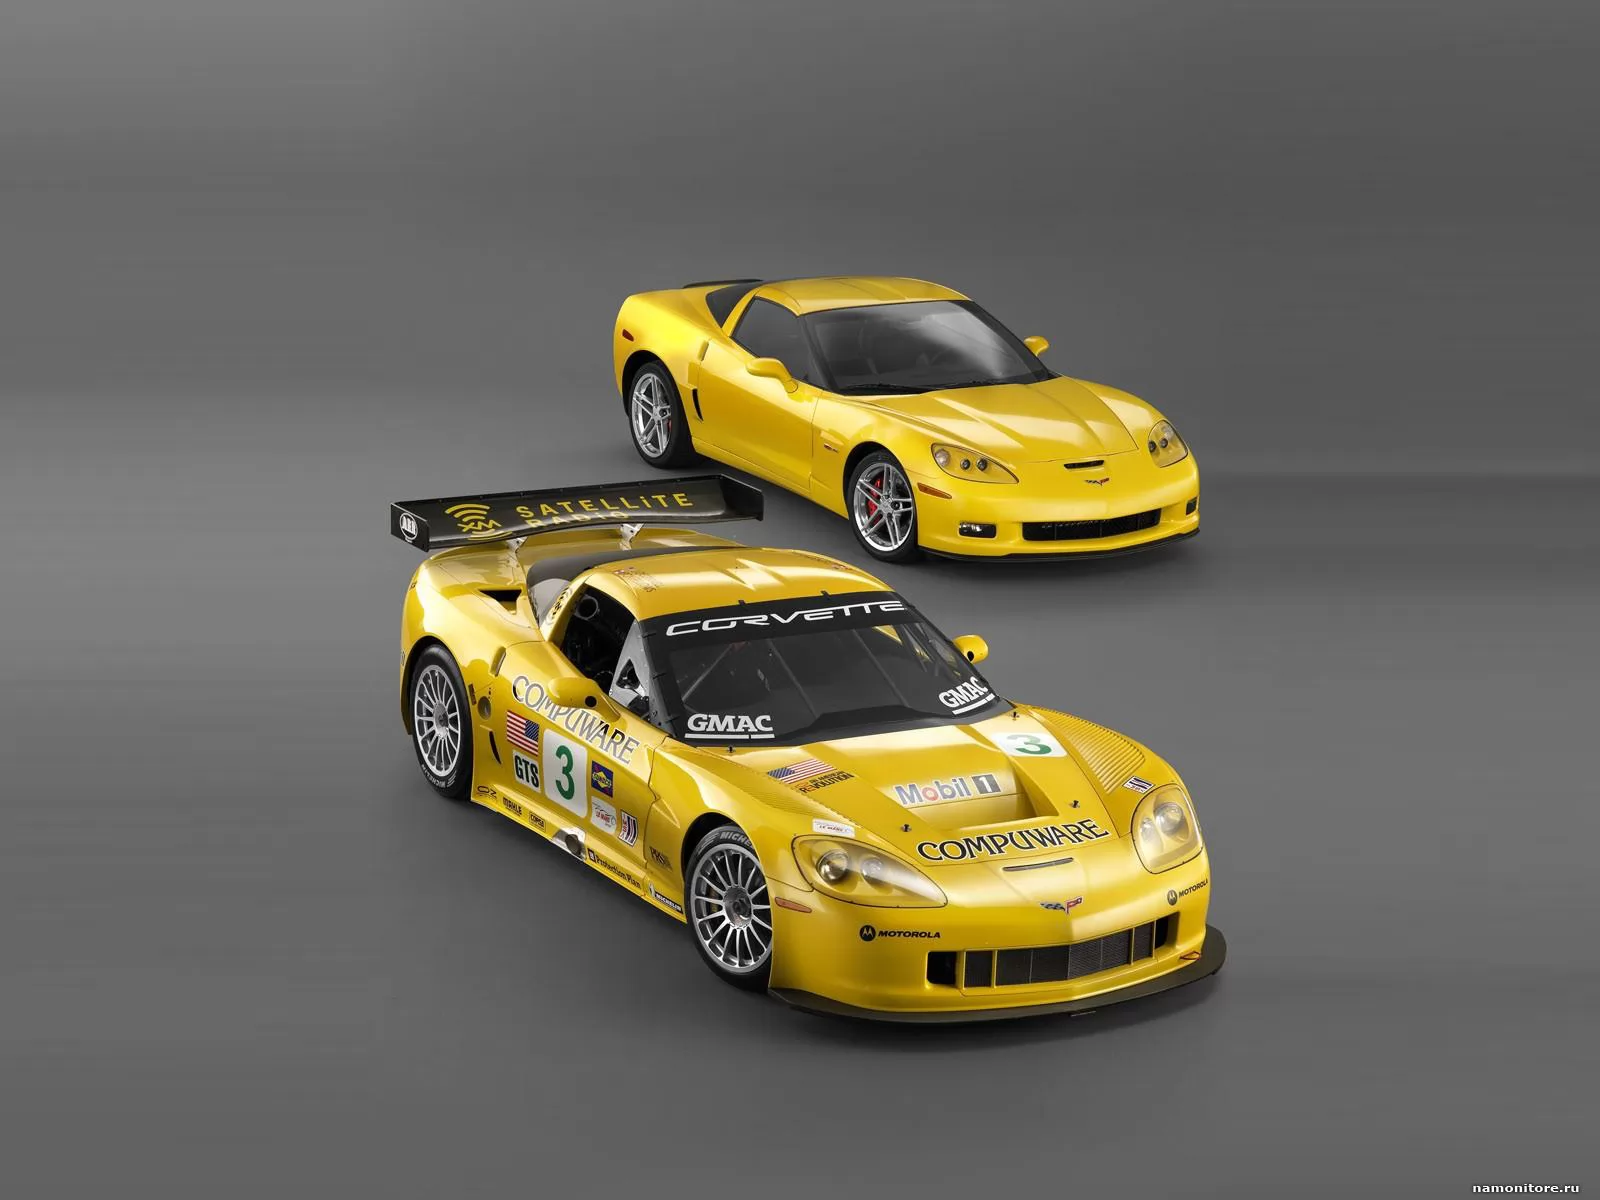 Как играть в желтую машину. Chevrolet Corvette c6 2006. Chevrolet Corvette z06 c6 2006 желтый. Chevrolet Corvette c6 желтый. Классический желтый гоночный авто.